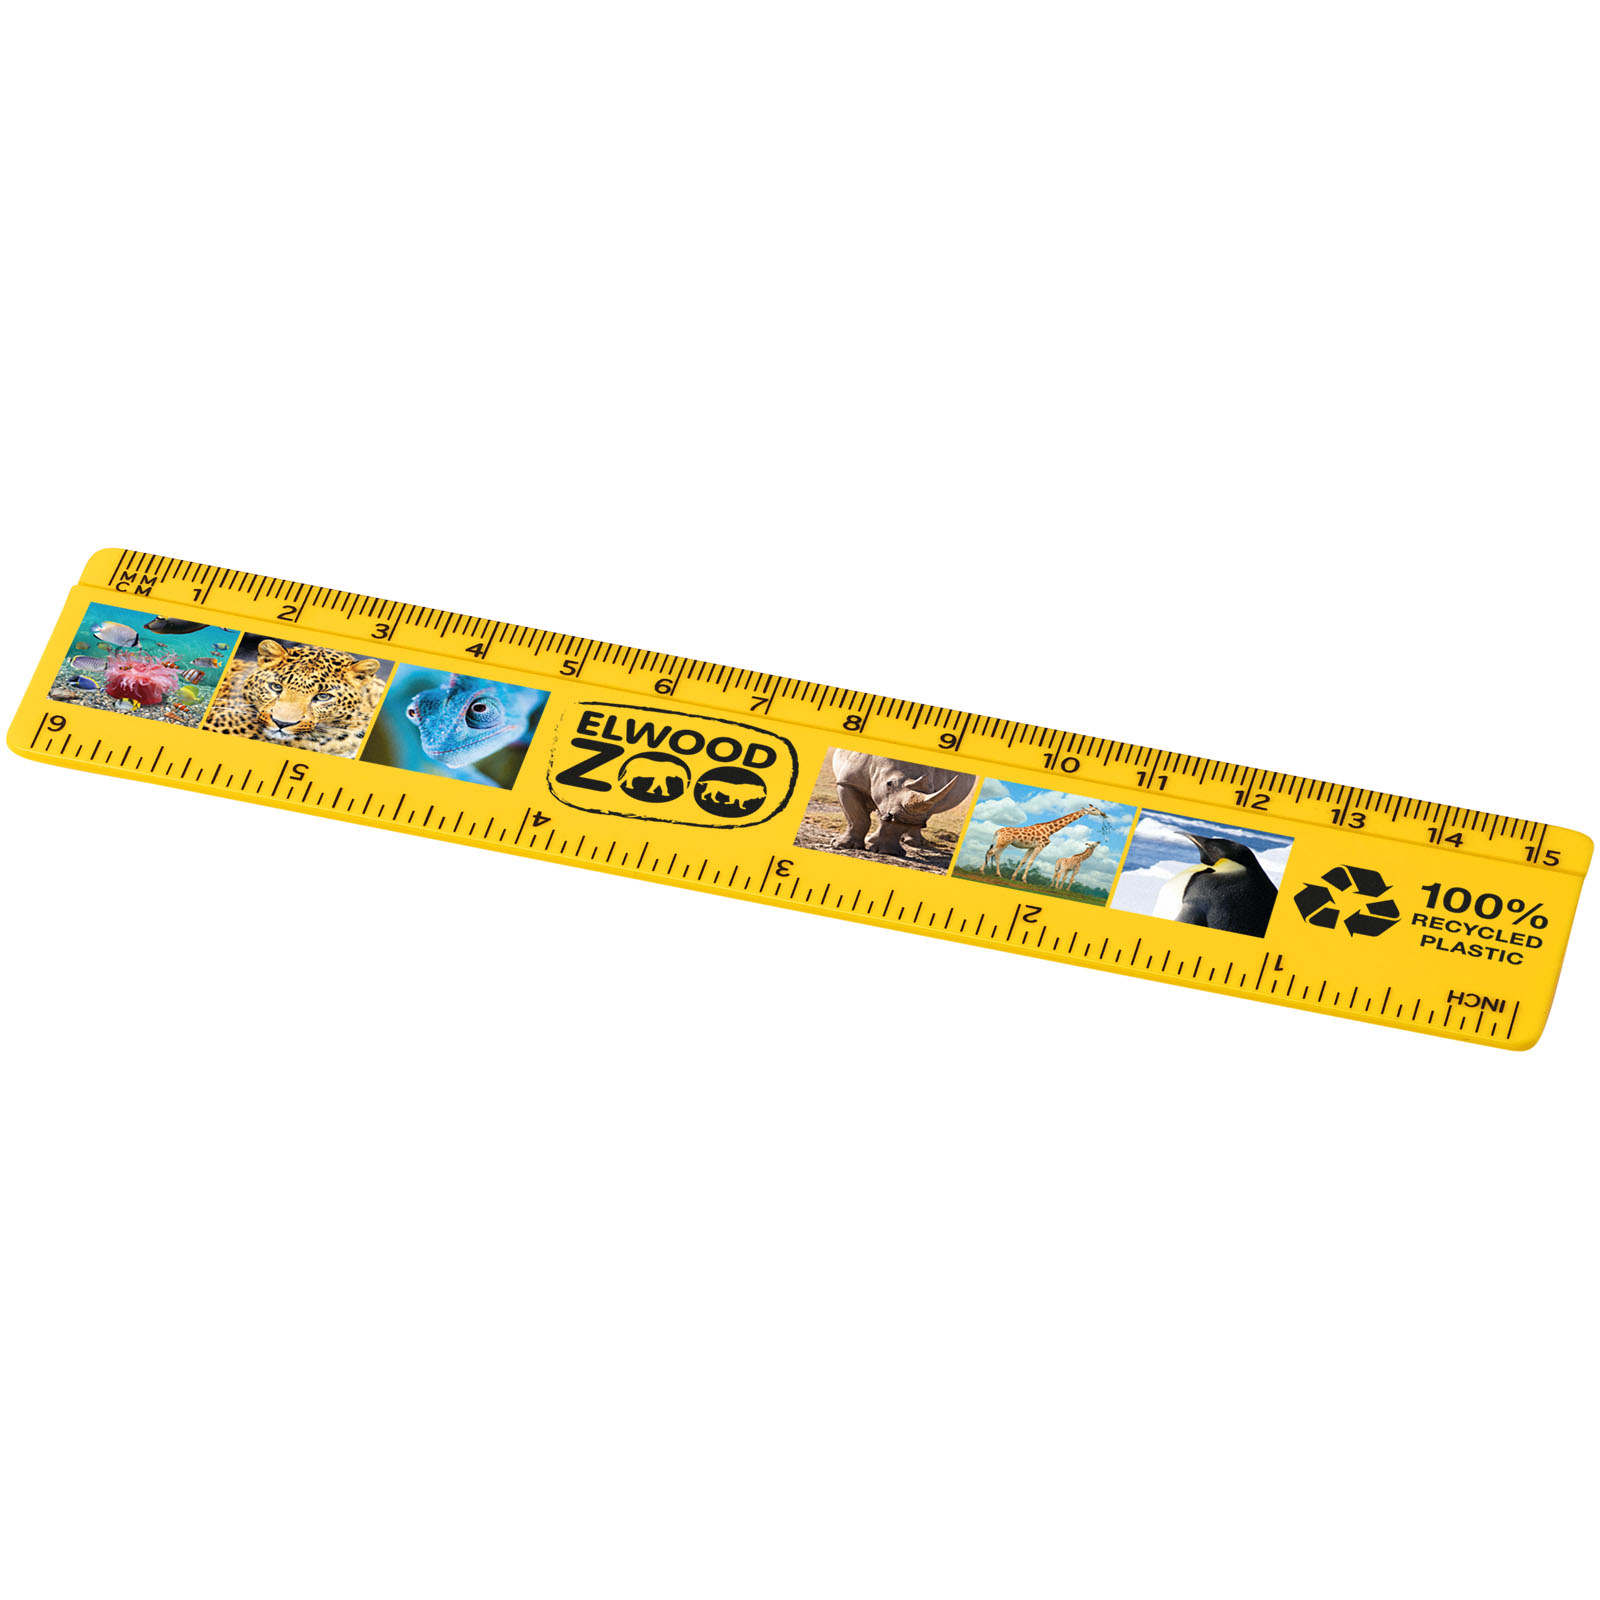 Refari 15 cm recycled plastic ruler